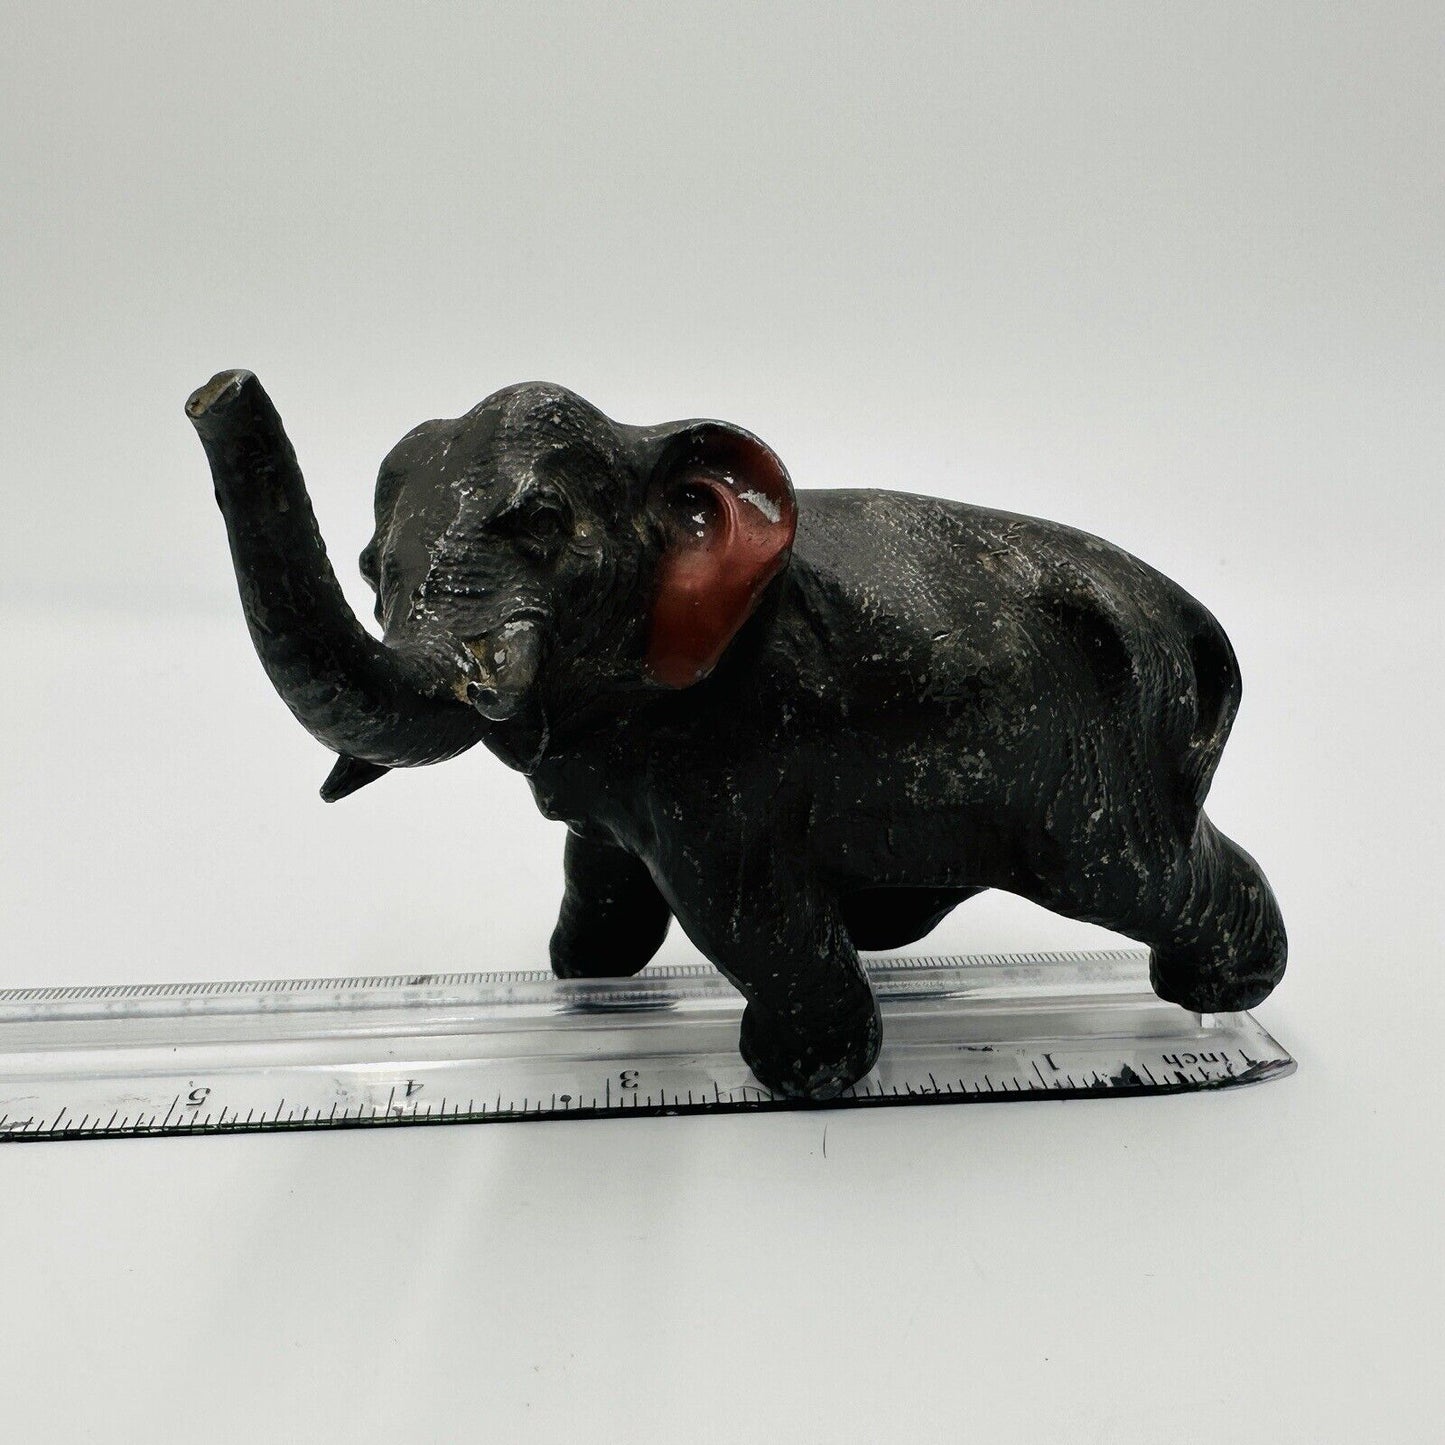 Vintage Metal Elephant Figurine Trunk Up Realistic Japan Metal Red Ears